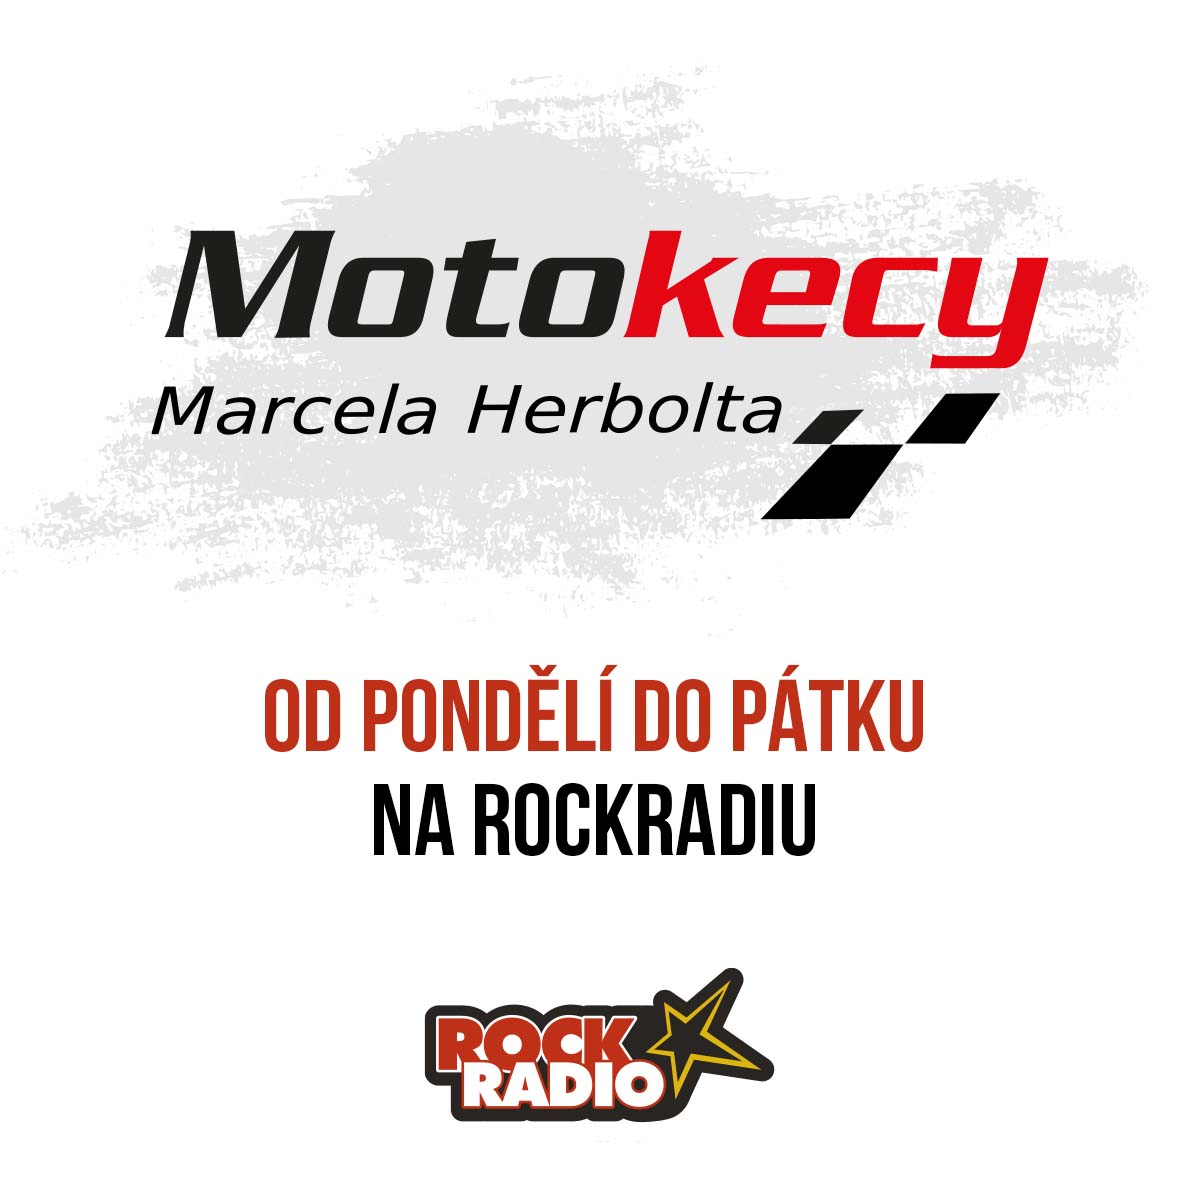 Motokecy Marcela Herbolta na pondělí 09 října